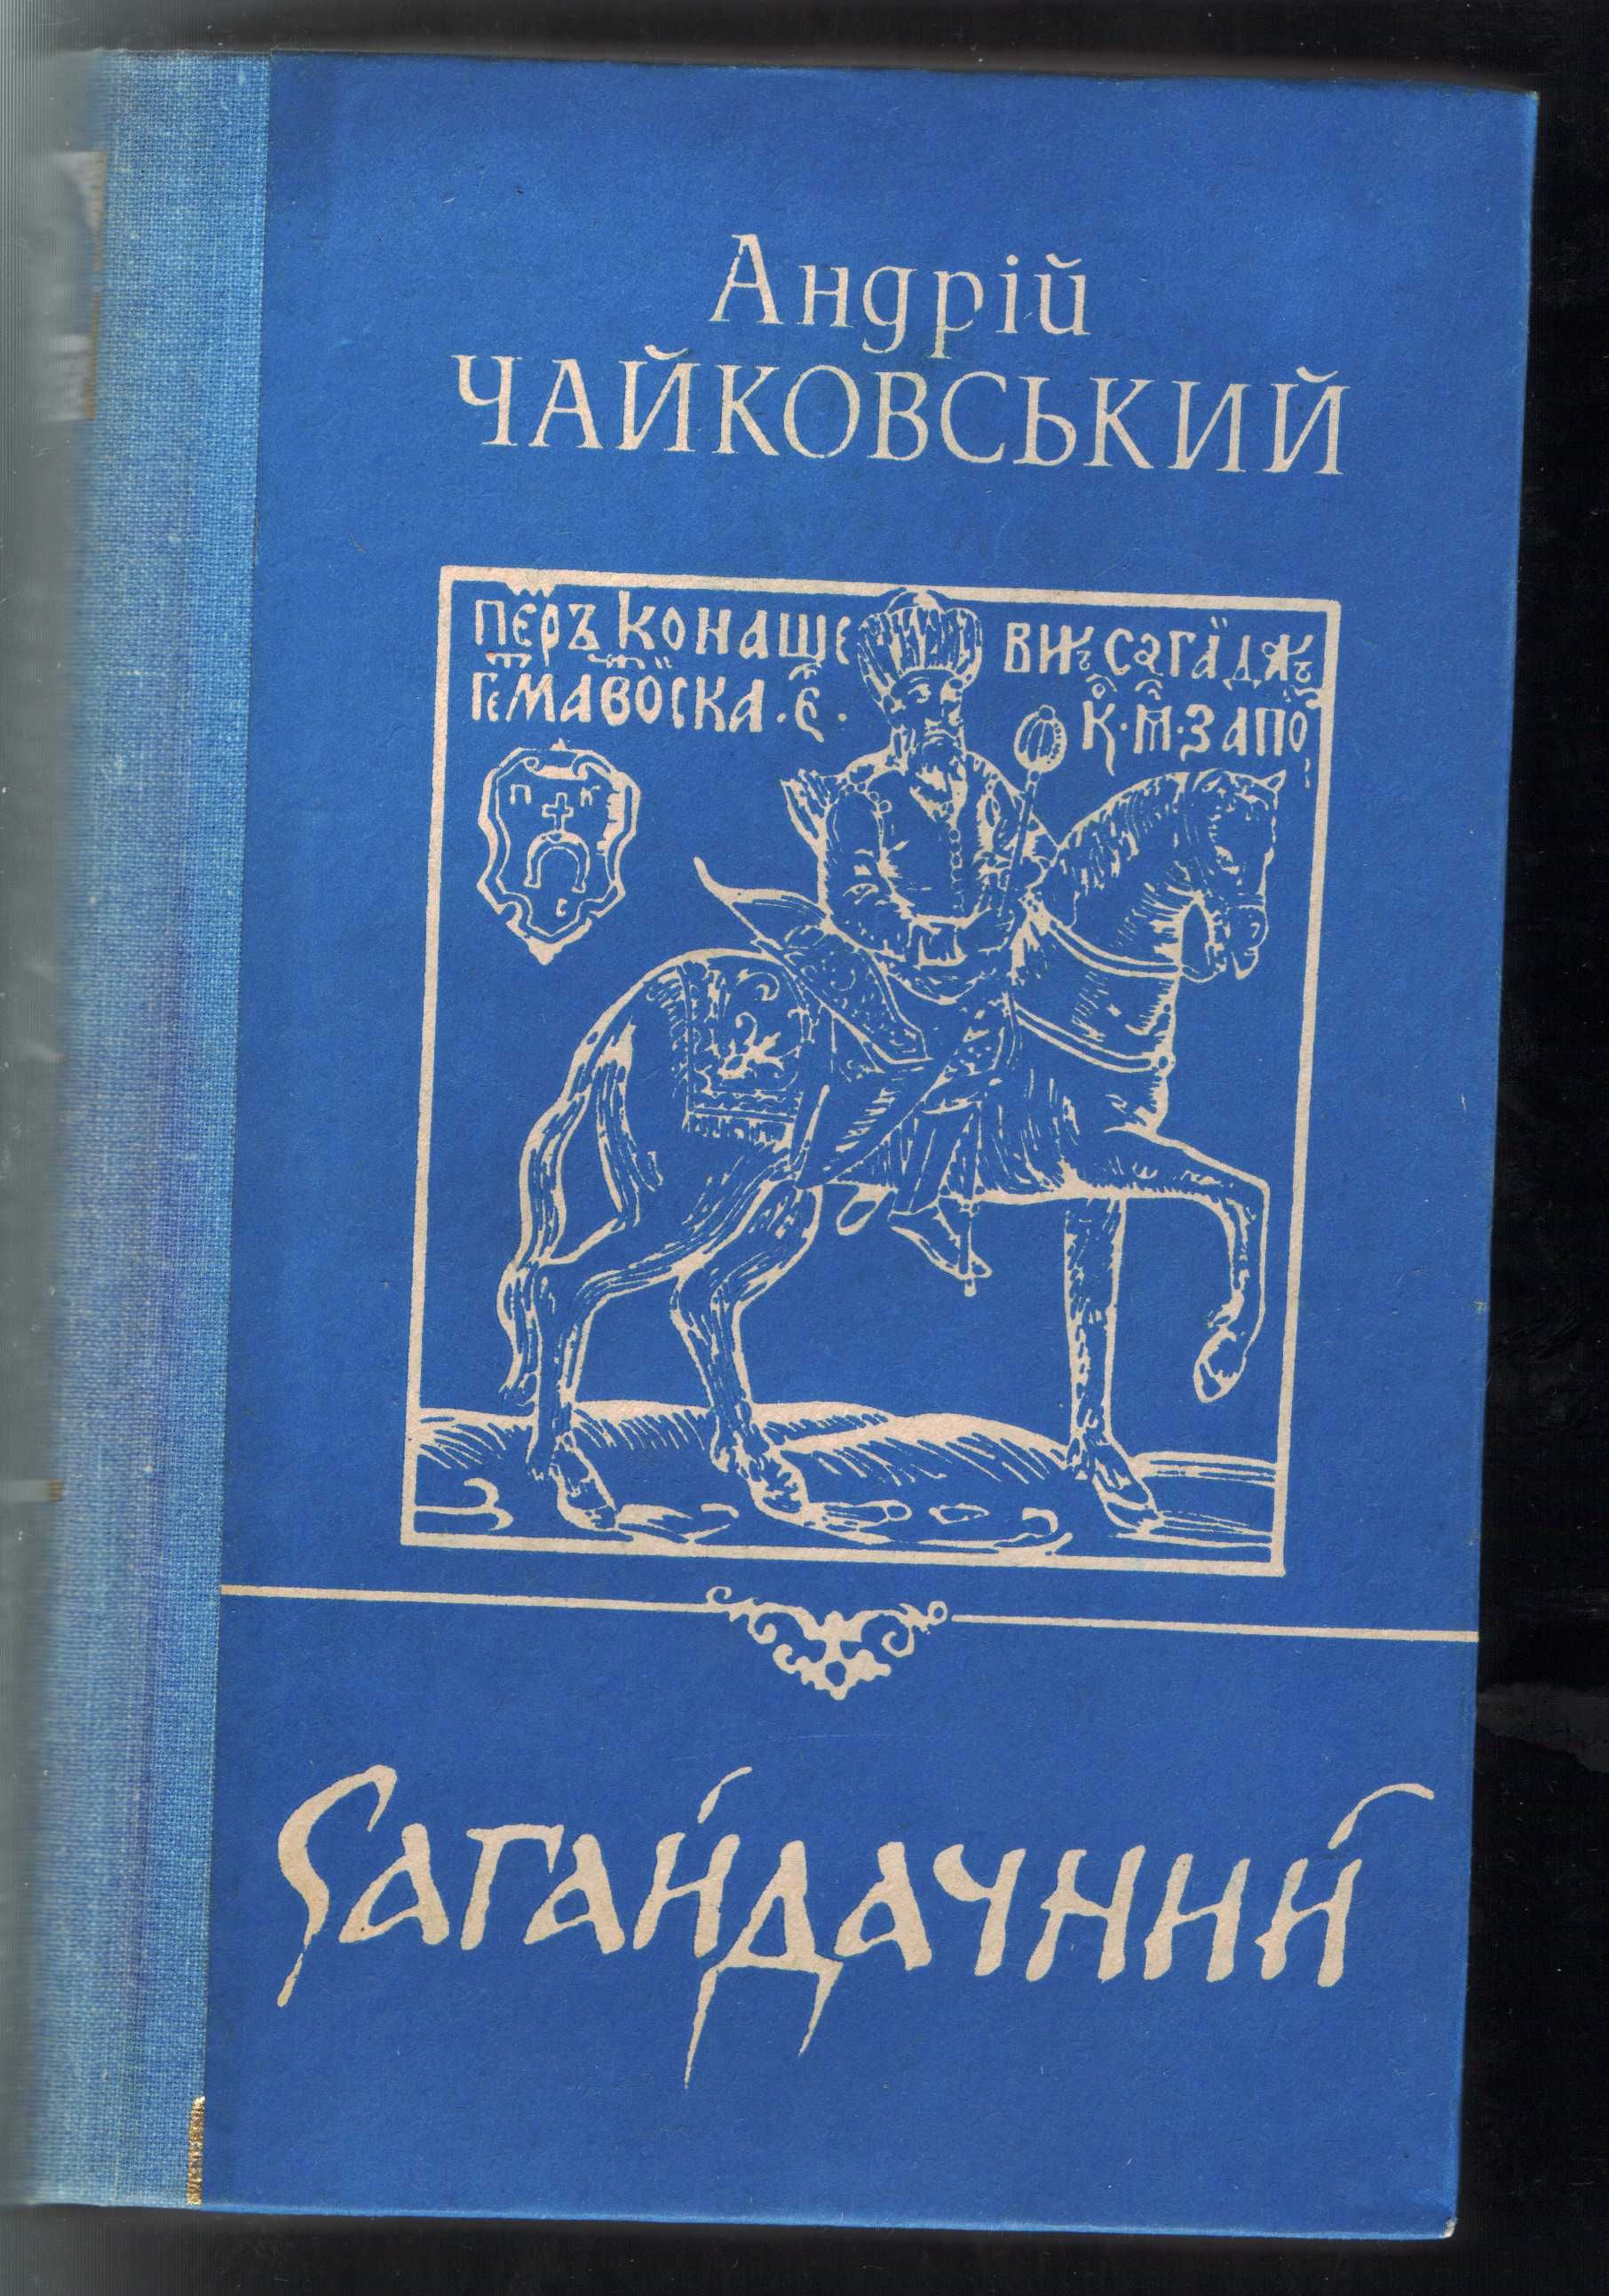 Книга Андрія Чайковського "Сагайдачний"